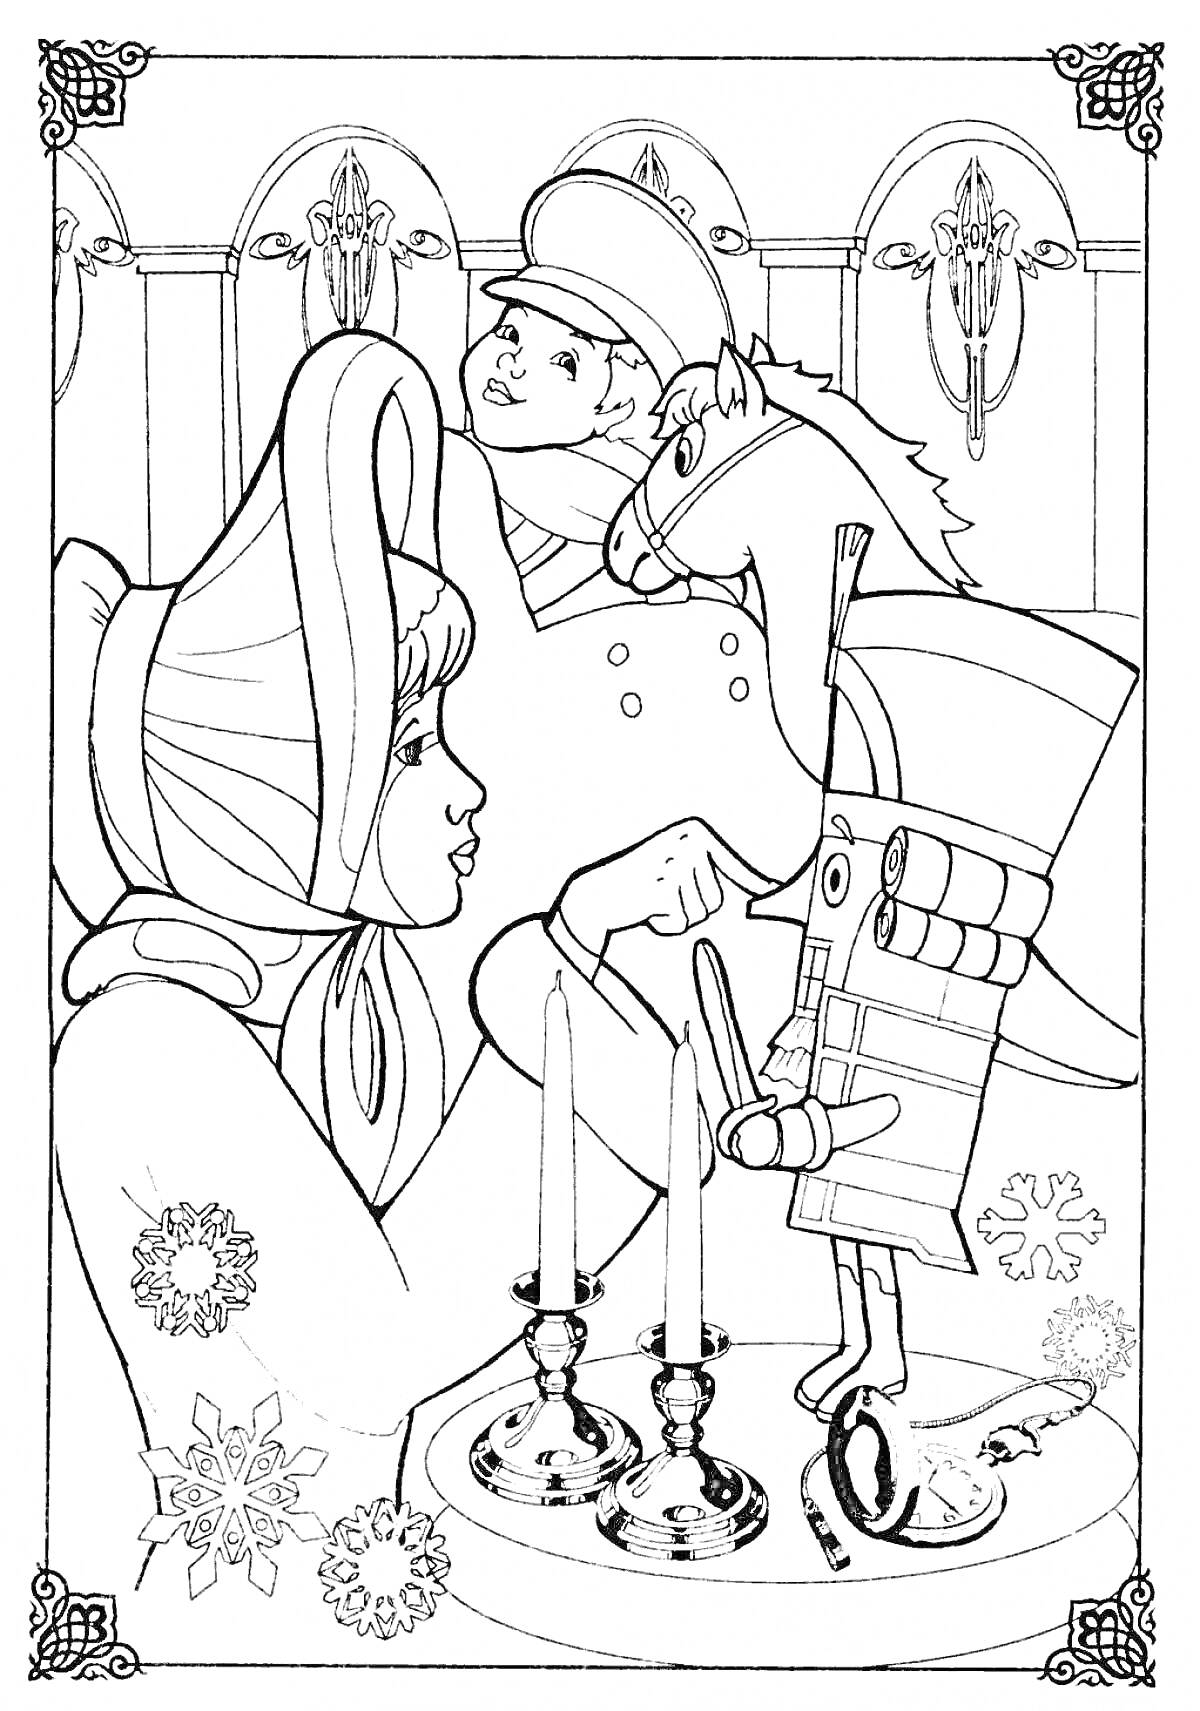 Девочка с капюшоном и Щелкунчик на коне возле подсвечников на фоне новогодних снежинок и лепнины